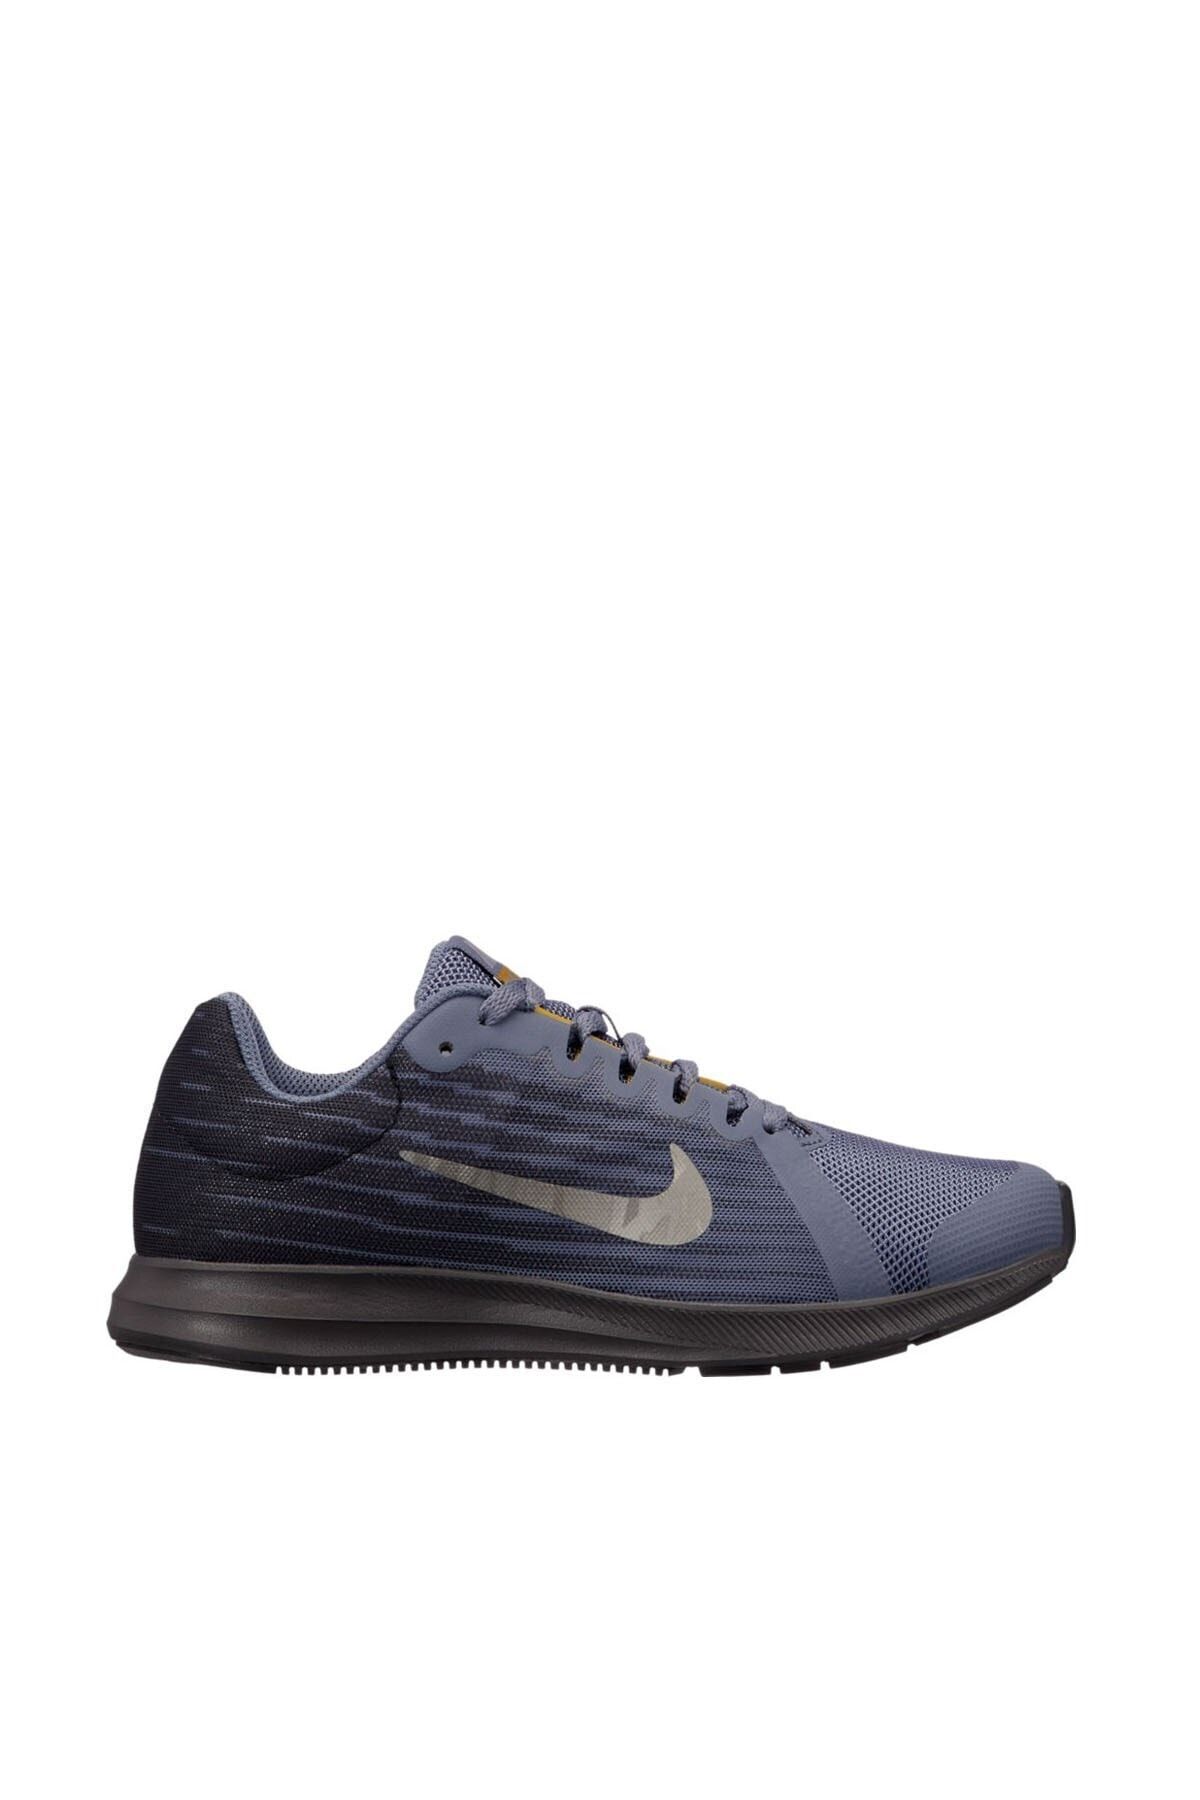 Nike Downshıfter 8 (gs) Kadın Yürüyüş Koşu Ayakkabı 922853-009